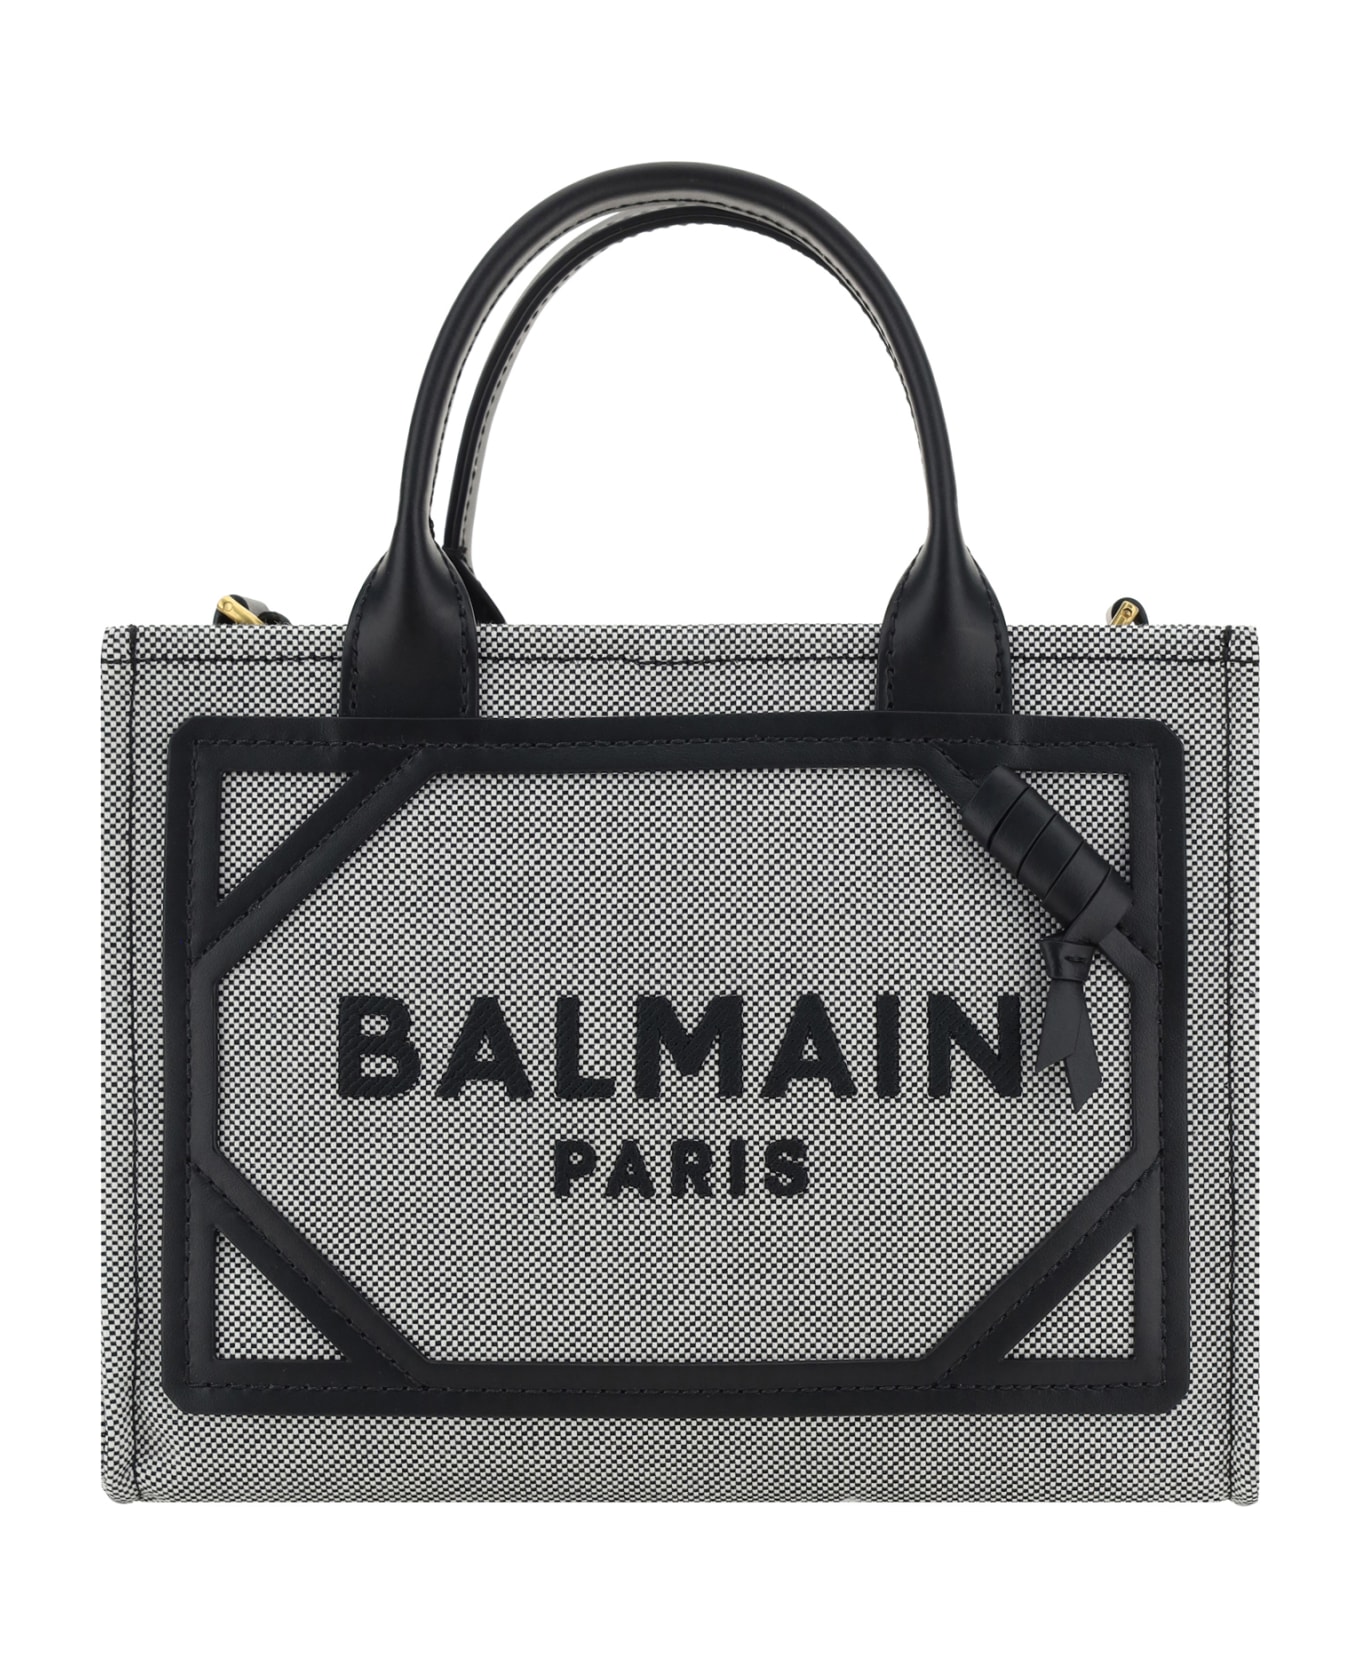 Balmain B-army Handbag - Eab Noir/blanc